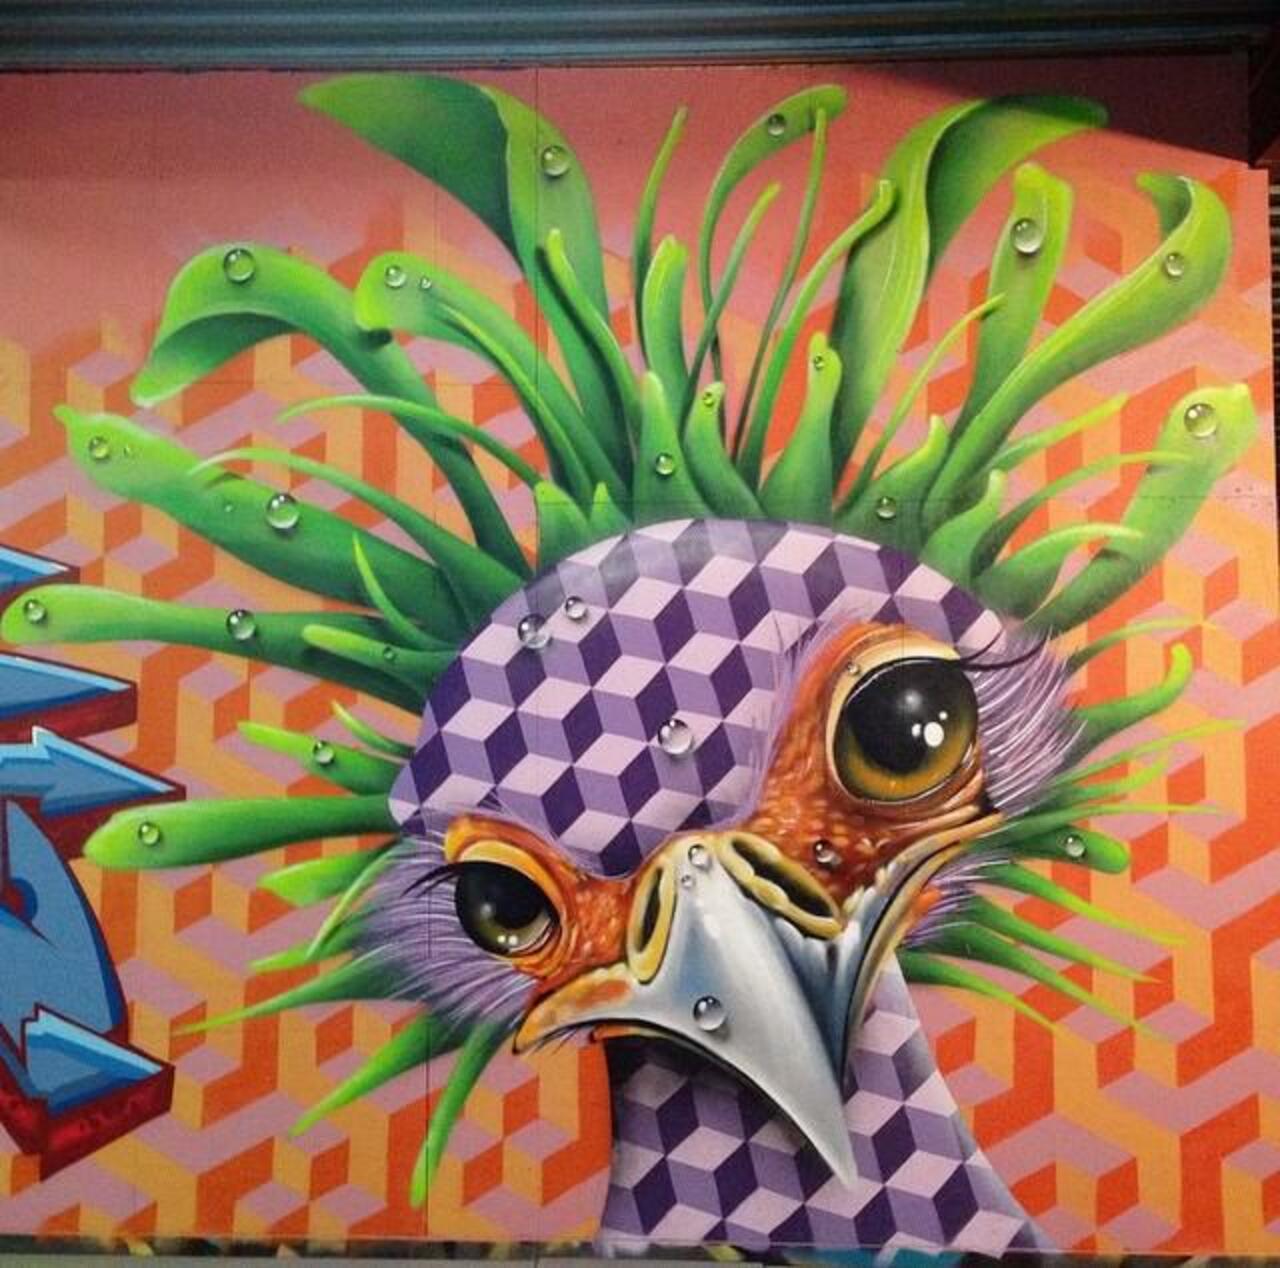 "@GoogleStreetArt: Love this nature in Street Art by the artist TimTimmey 
#art #mural #graffiti #streetart http://t.co/DVTbtzfwdZ"